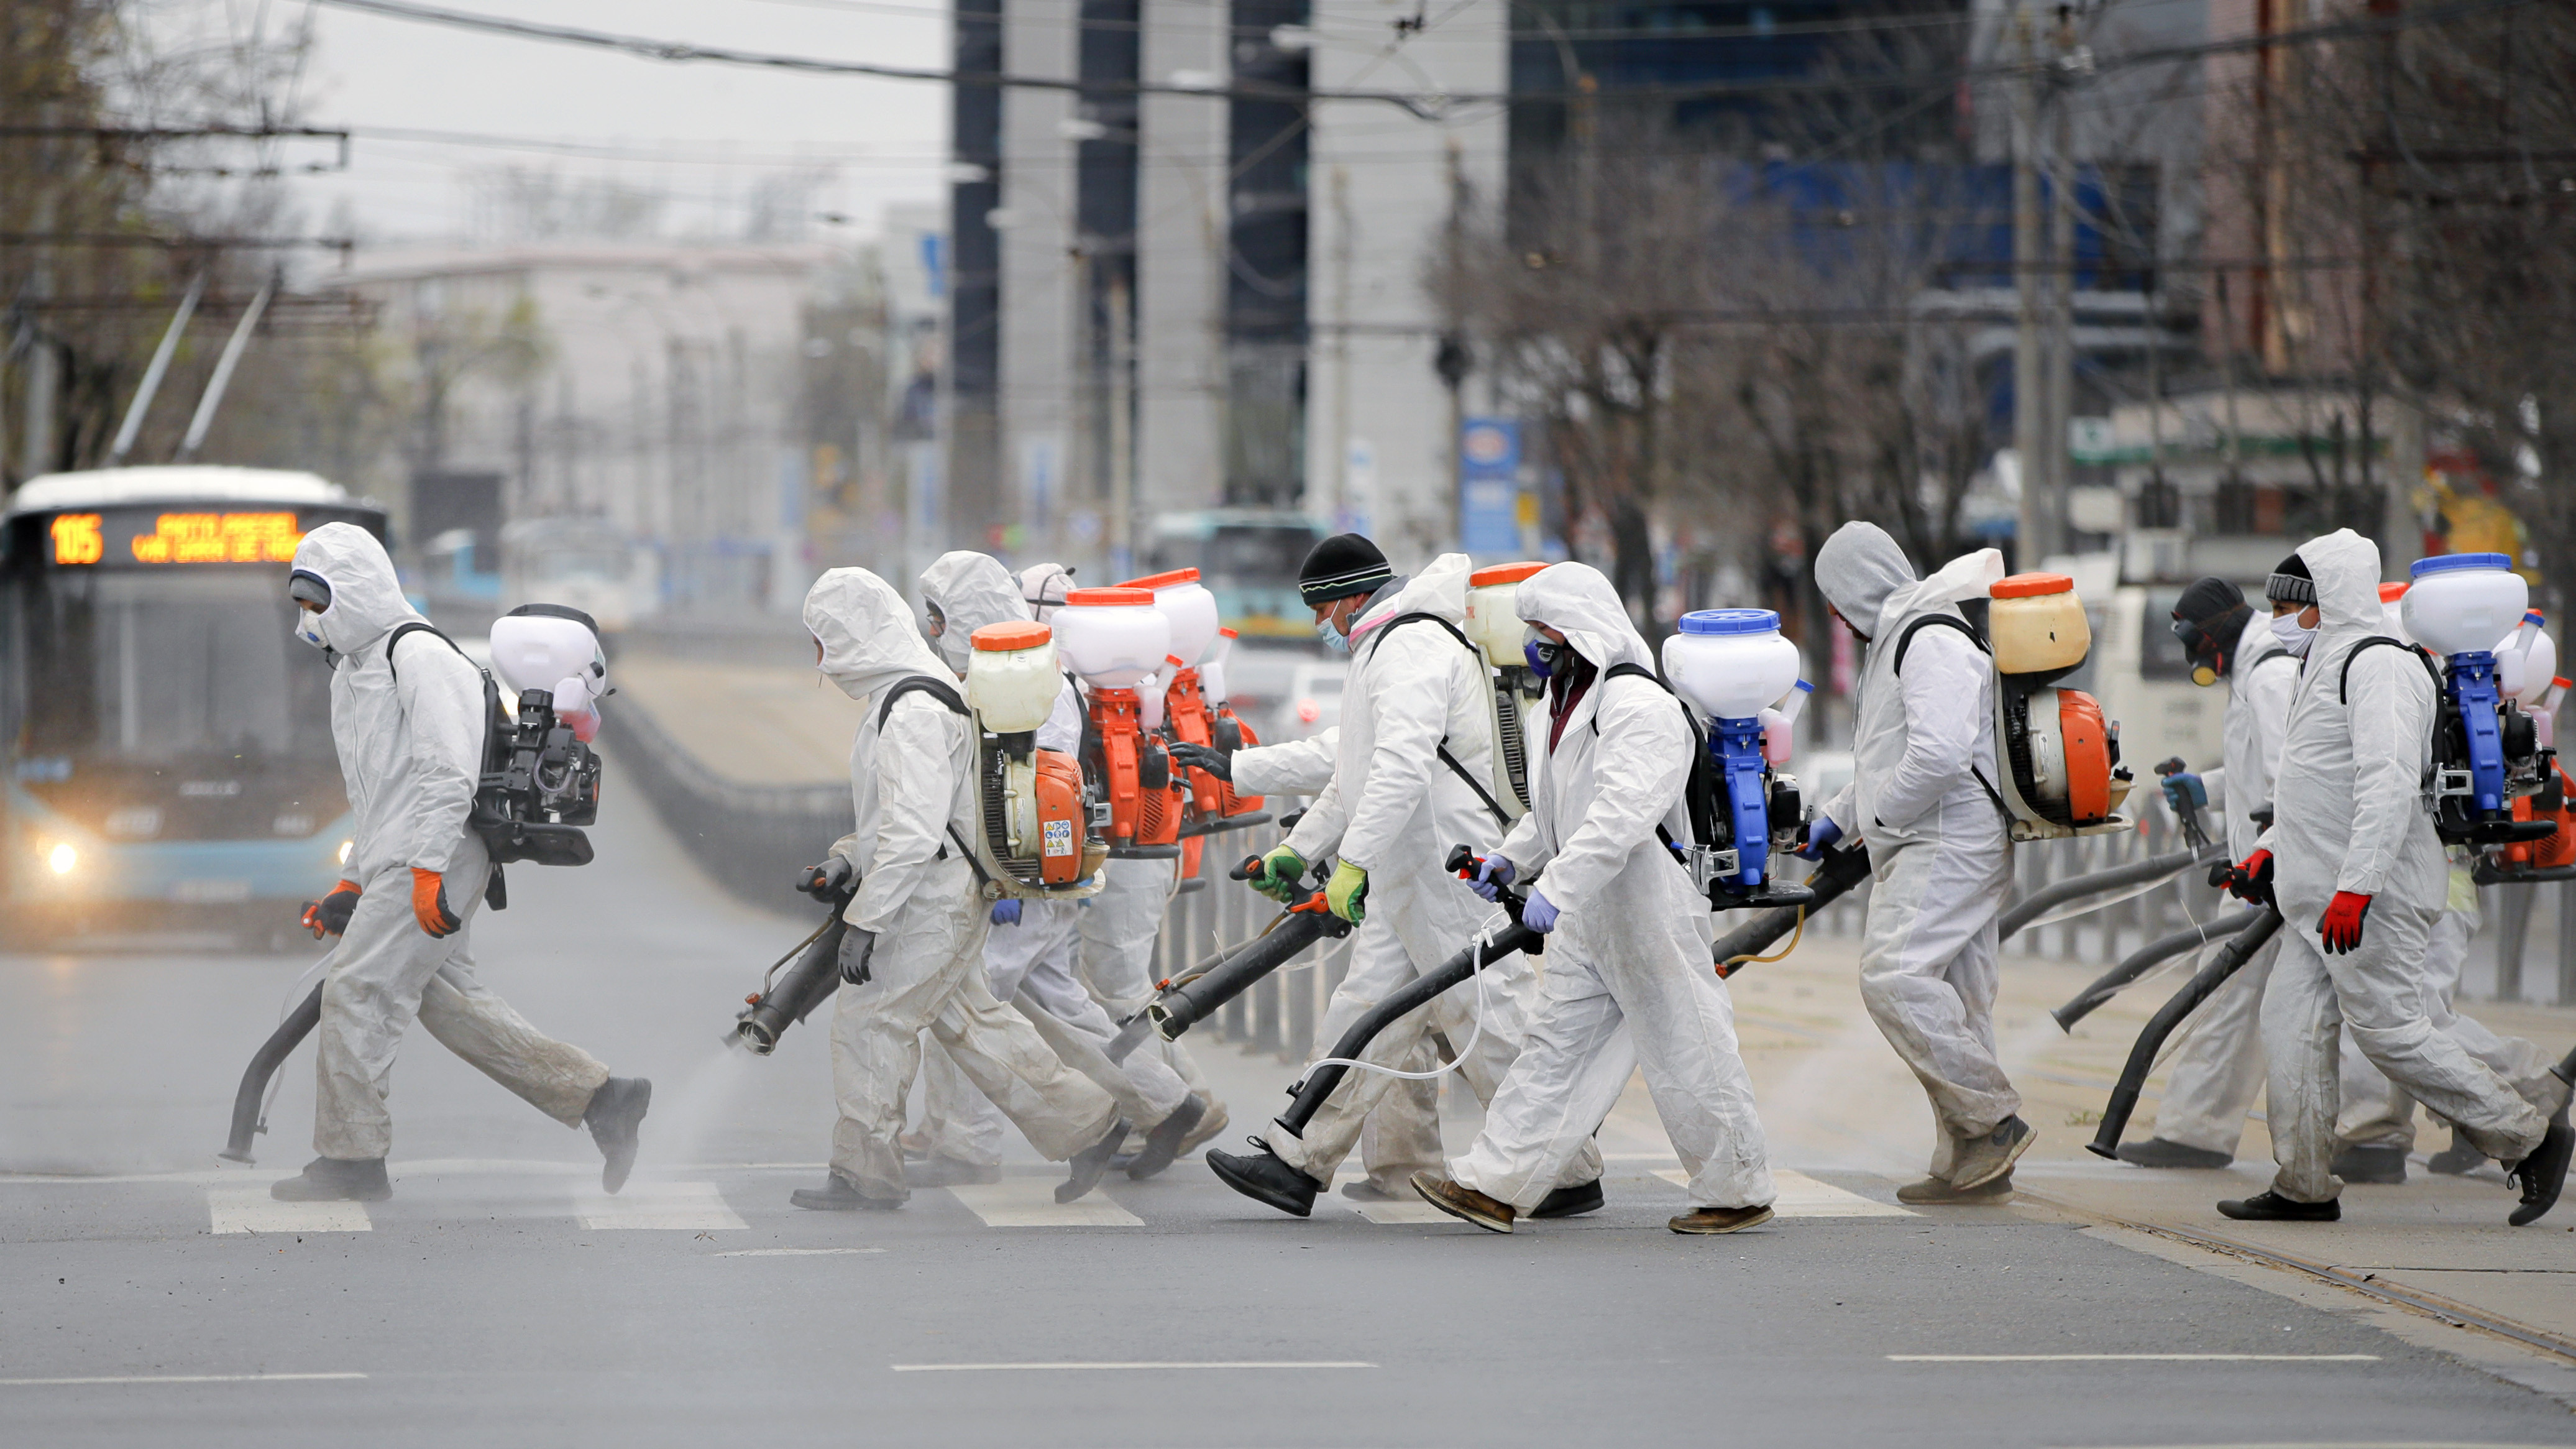 Trabalhadores municipais vestindo   roupas de proteção pulverizam produtos   químicos e desinfetam ruas em área da   capital Bucareste, na Romênia.  - Foto: VADIM GHIRDA/ASSOCIATED PRESS/ESTADÃO CONTEÚDO